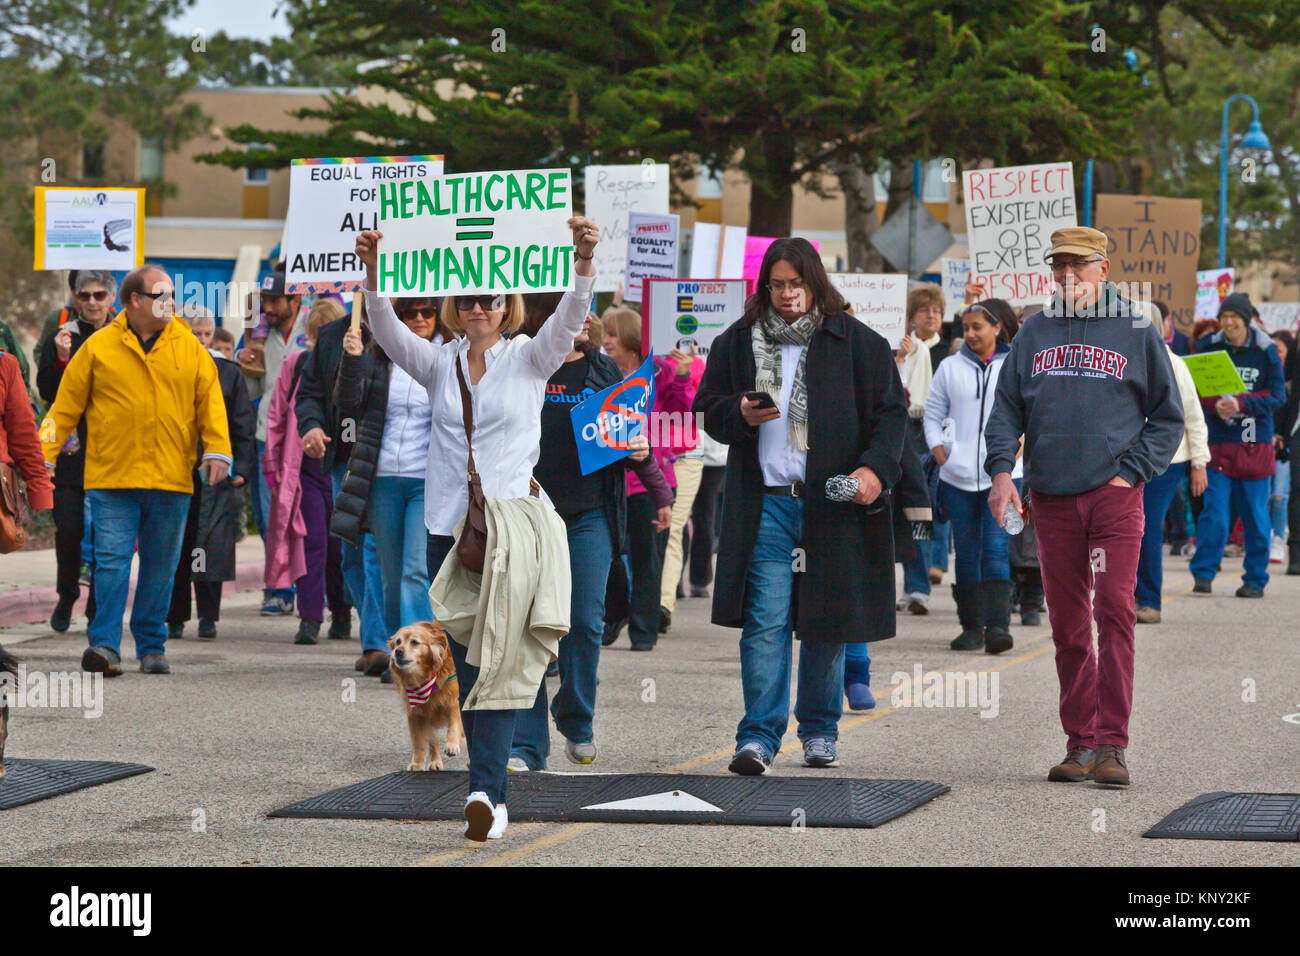 La Marche des femmes et la démonstration sur le campus de l'université, Monterey Bay le lendemain de l'atout de Donald est devenu président le 21 janvier 2017 - Monterey, Banque D'Images